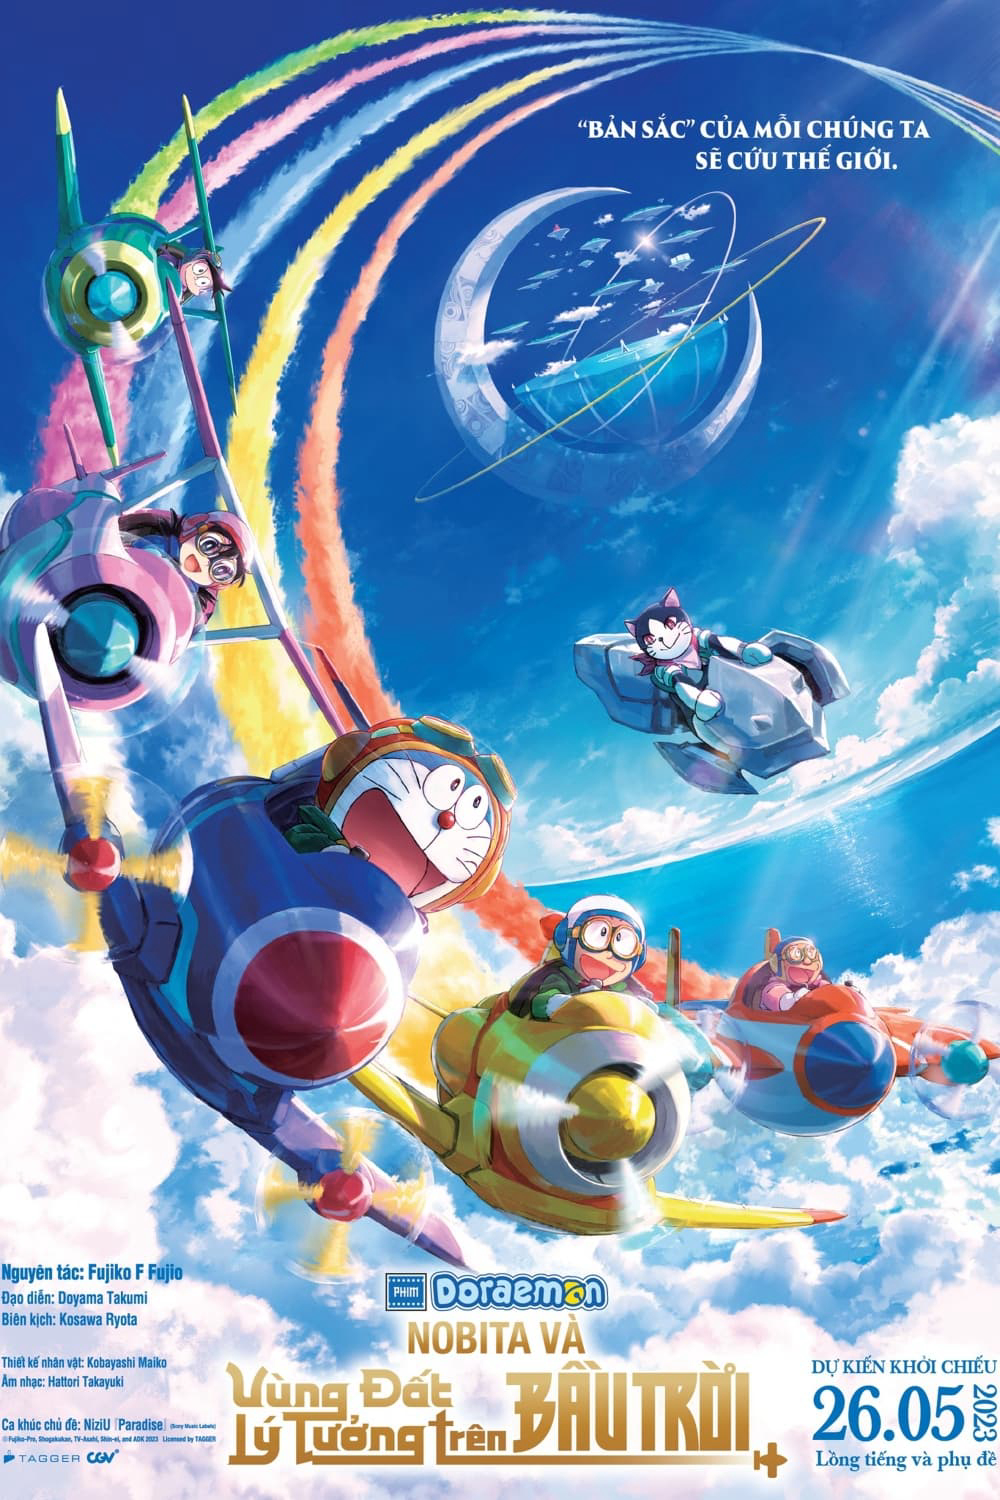 Poster Phim Doraemon: Nobita và Vùng Đất Lý Tưởng Trên Bầu Trời (Doraemon: Nobita's Sky Utopia)